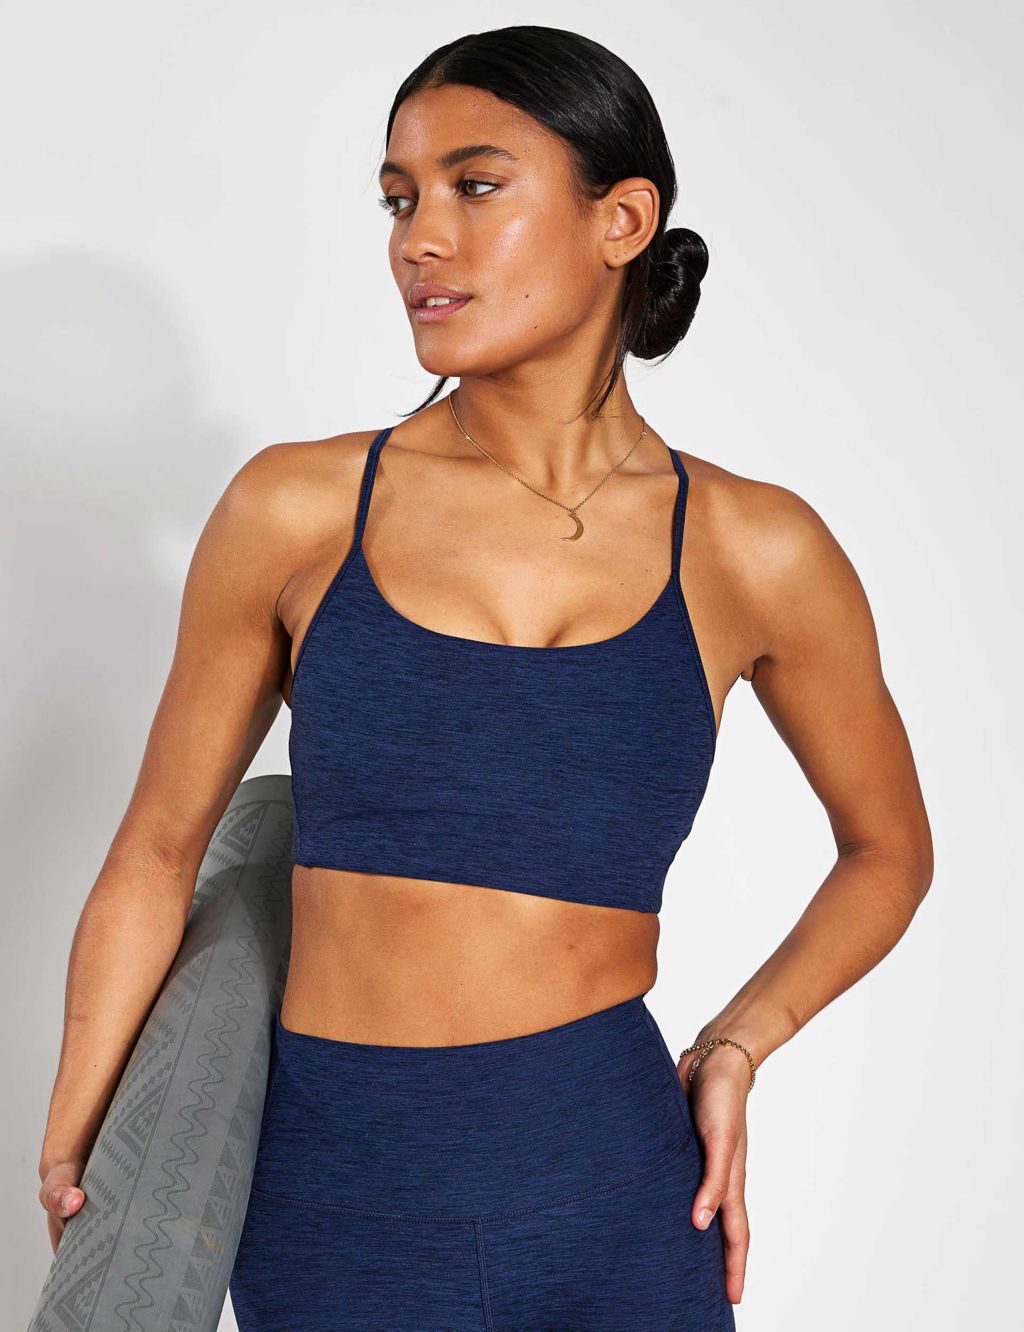 Women's sports bra PRO blue navy – NOX